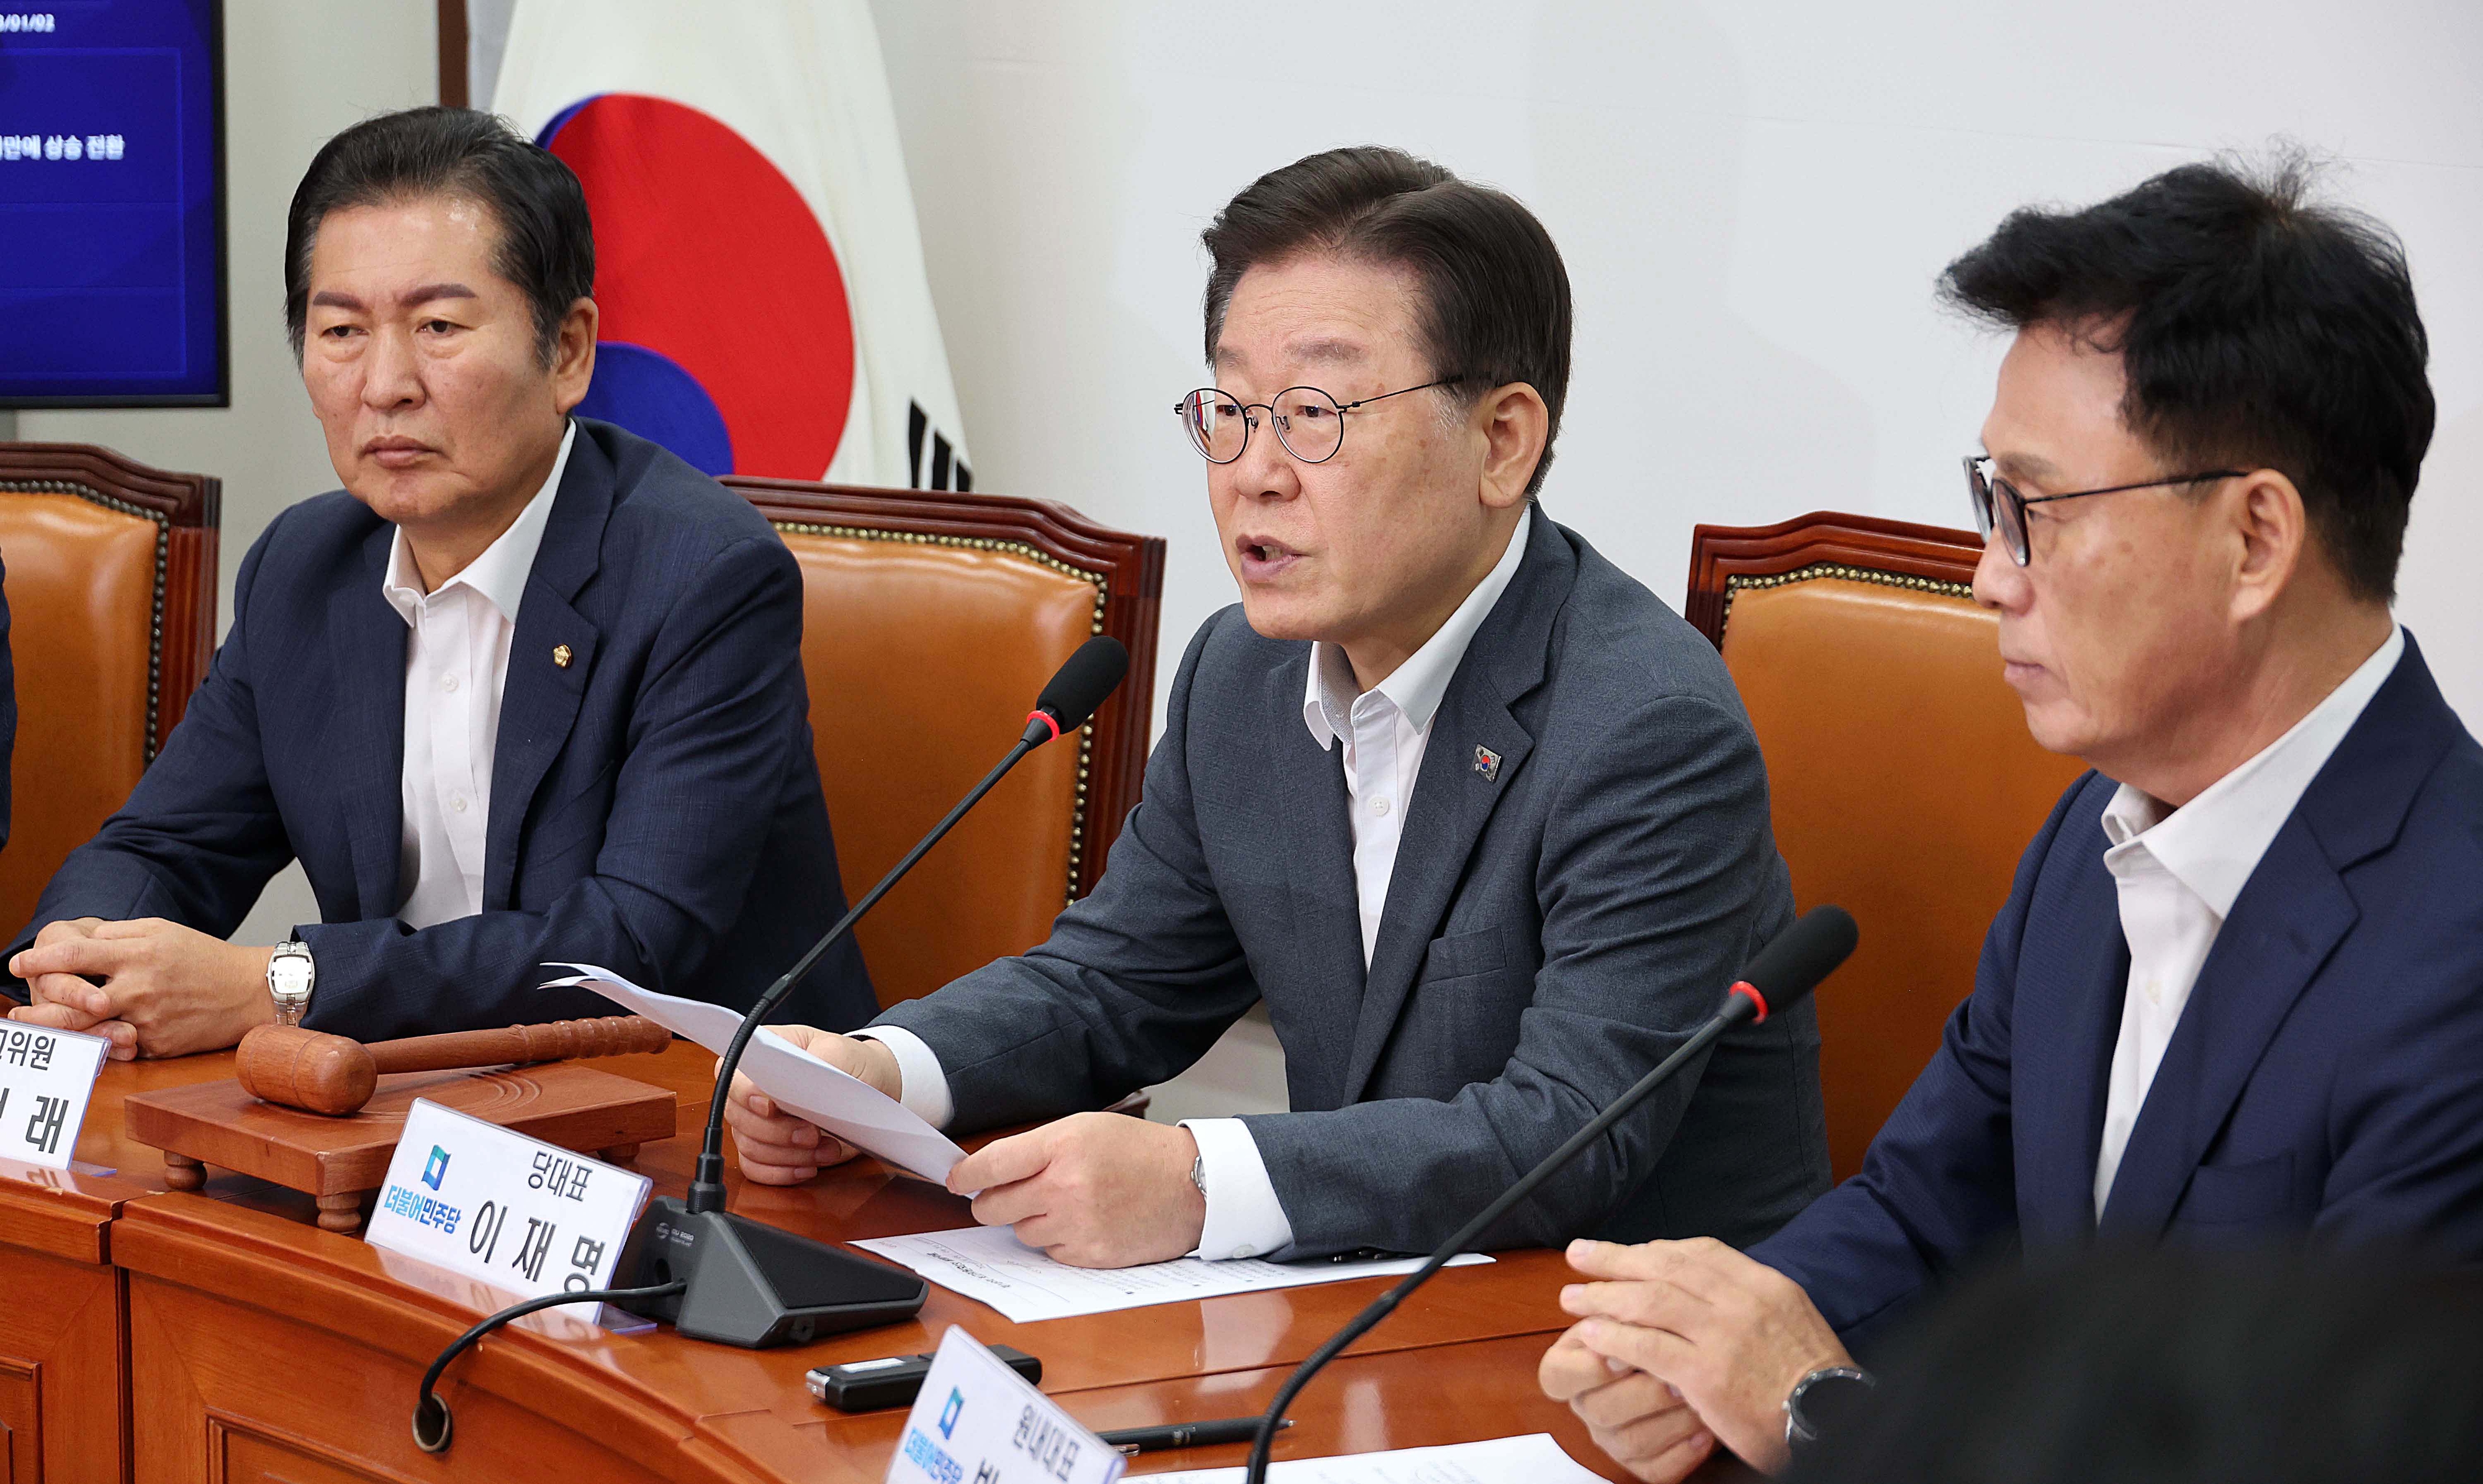 이재명(가운데) 더불어민주당 대표가 21일 민주당 최고위원회의에서 발언하는 모습. 오장환 기자